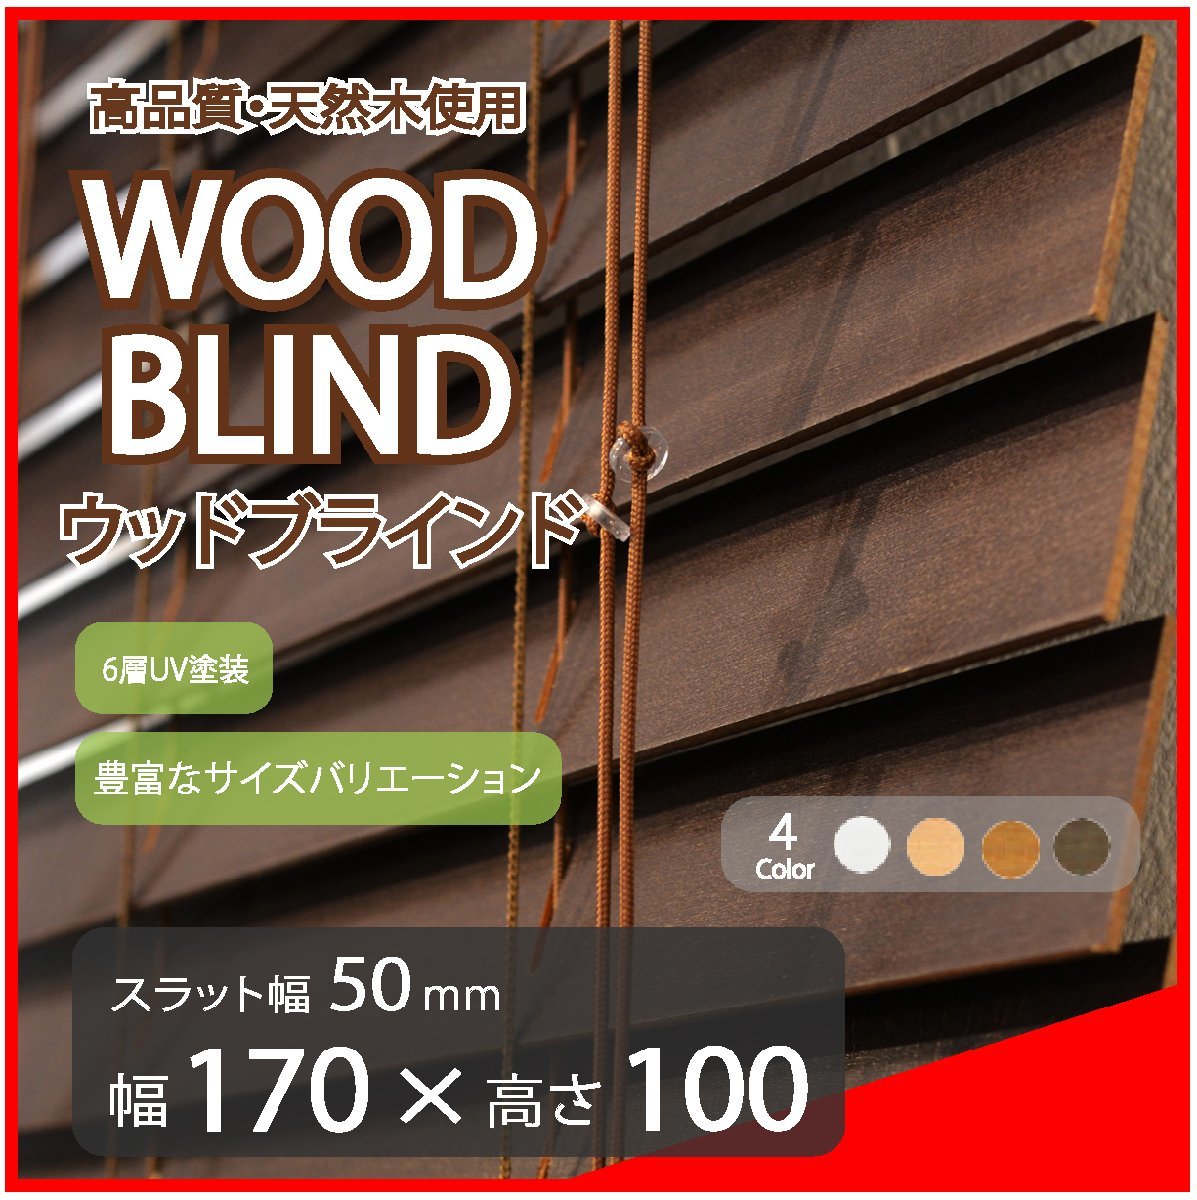 高品質 ウッドブラインド 木製 ブラインド 既成サイズ スラット(羽根)幅50mm 幅170cm×高さ100cm ダーク